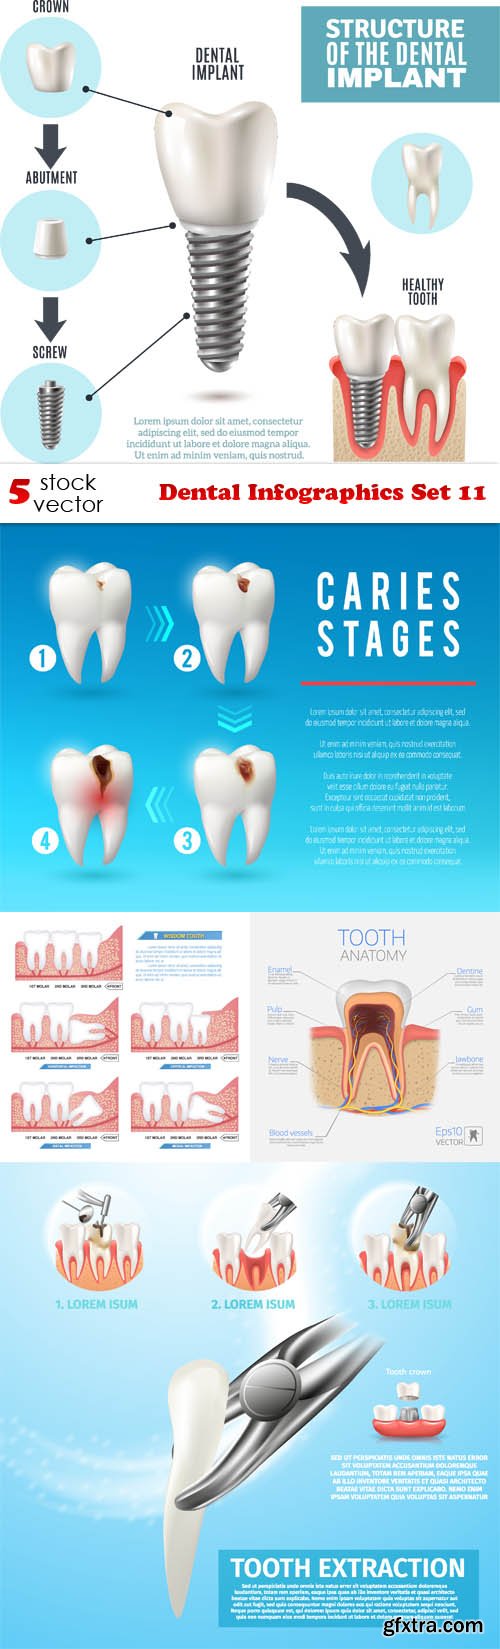 Vectors - Dental Infographics Set 11